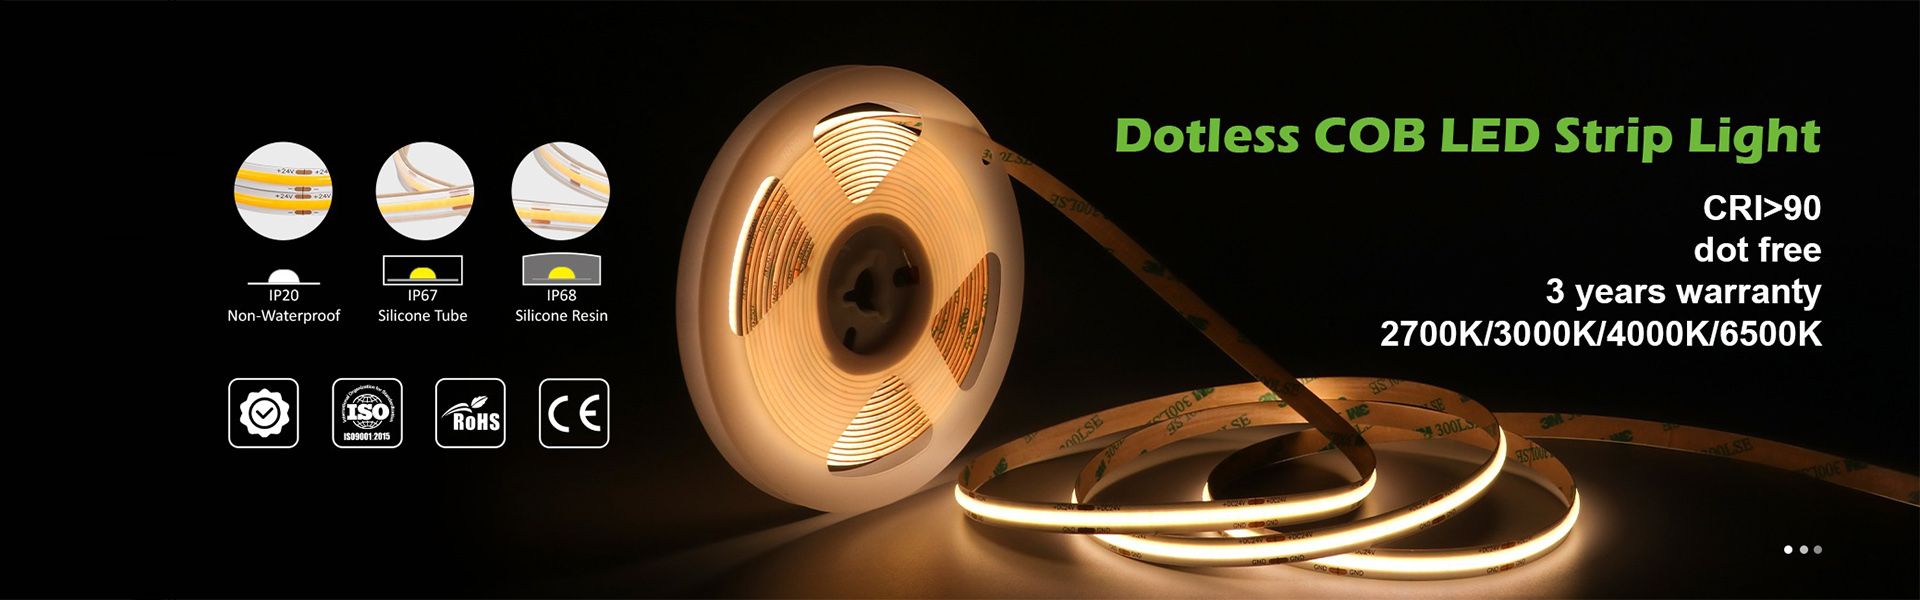 iluminare cu bandă cu LED, lumină deneon, iluminare cu bandă de cob,AWS (SZ) Technology Company Limited